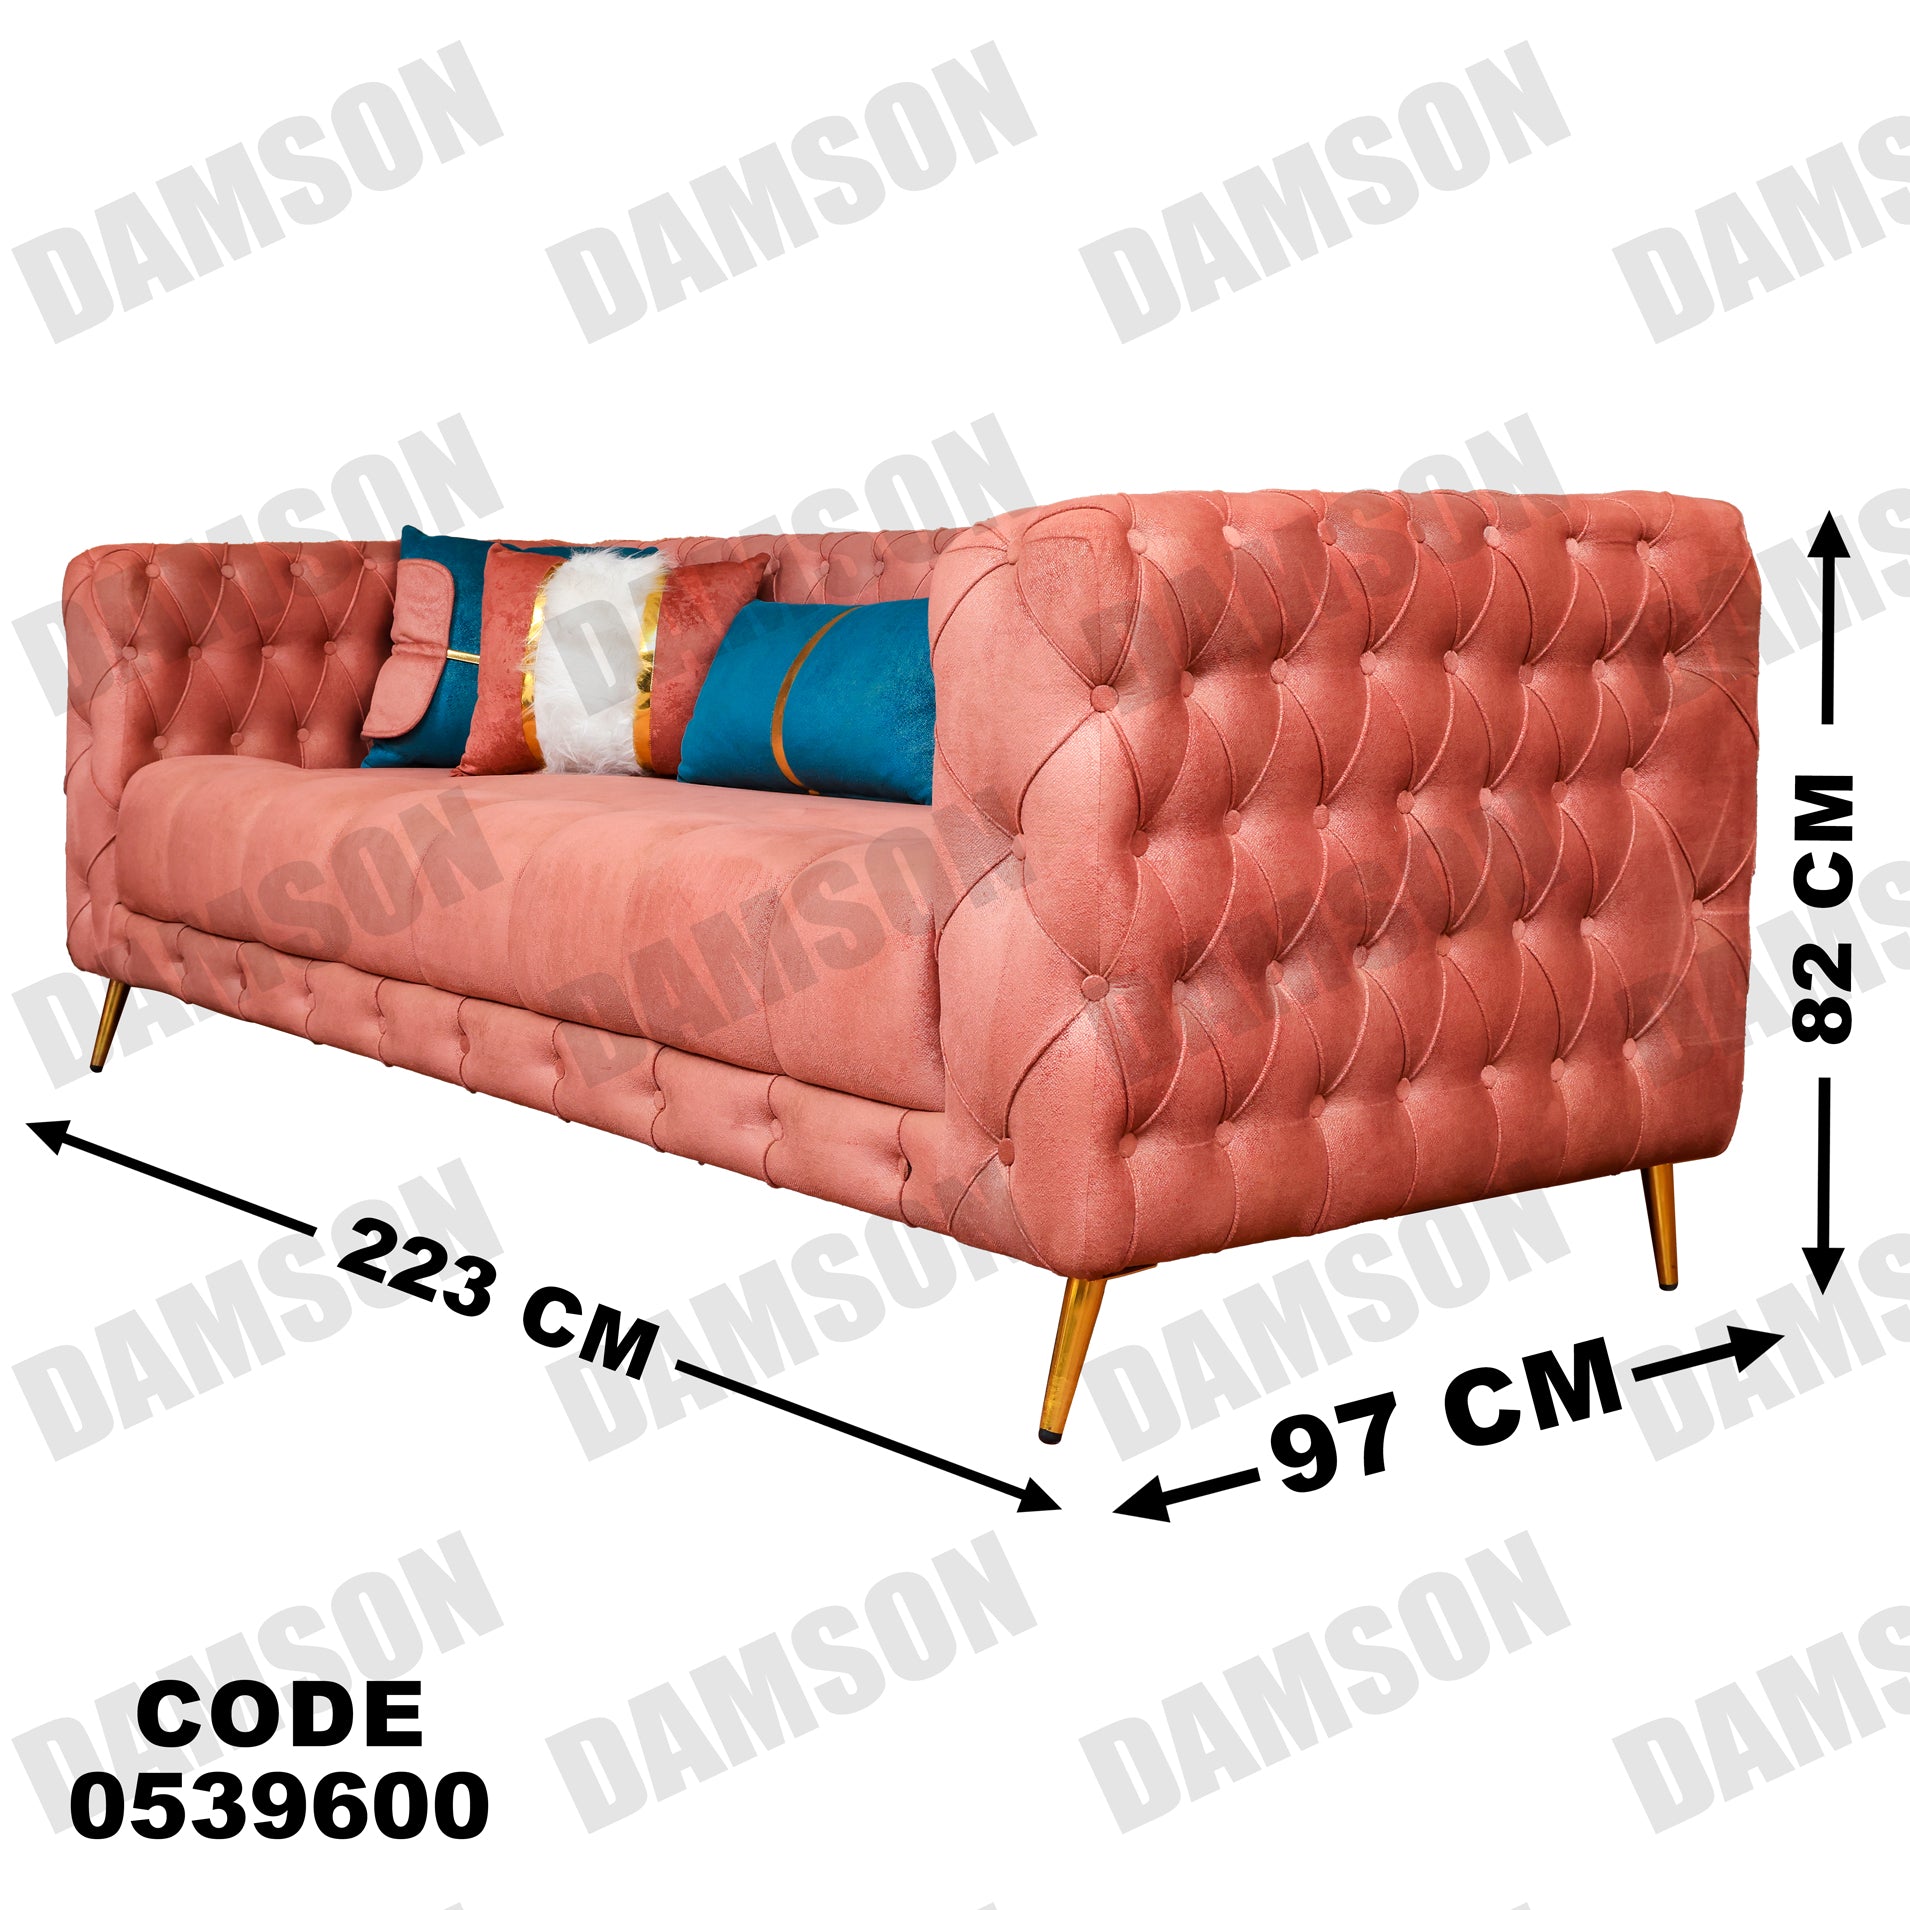 انترية 396 - Damson Furnitureانترية 396